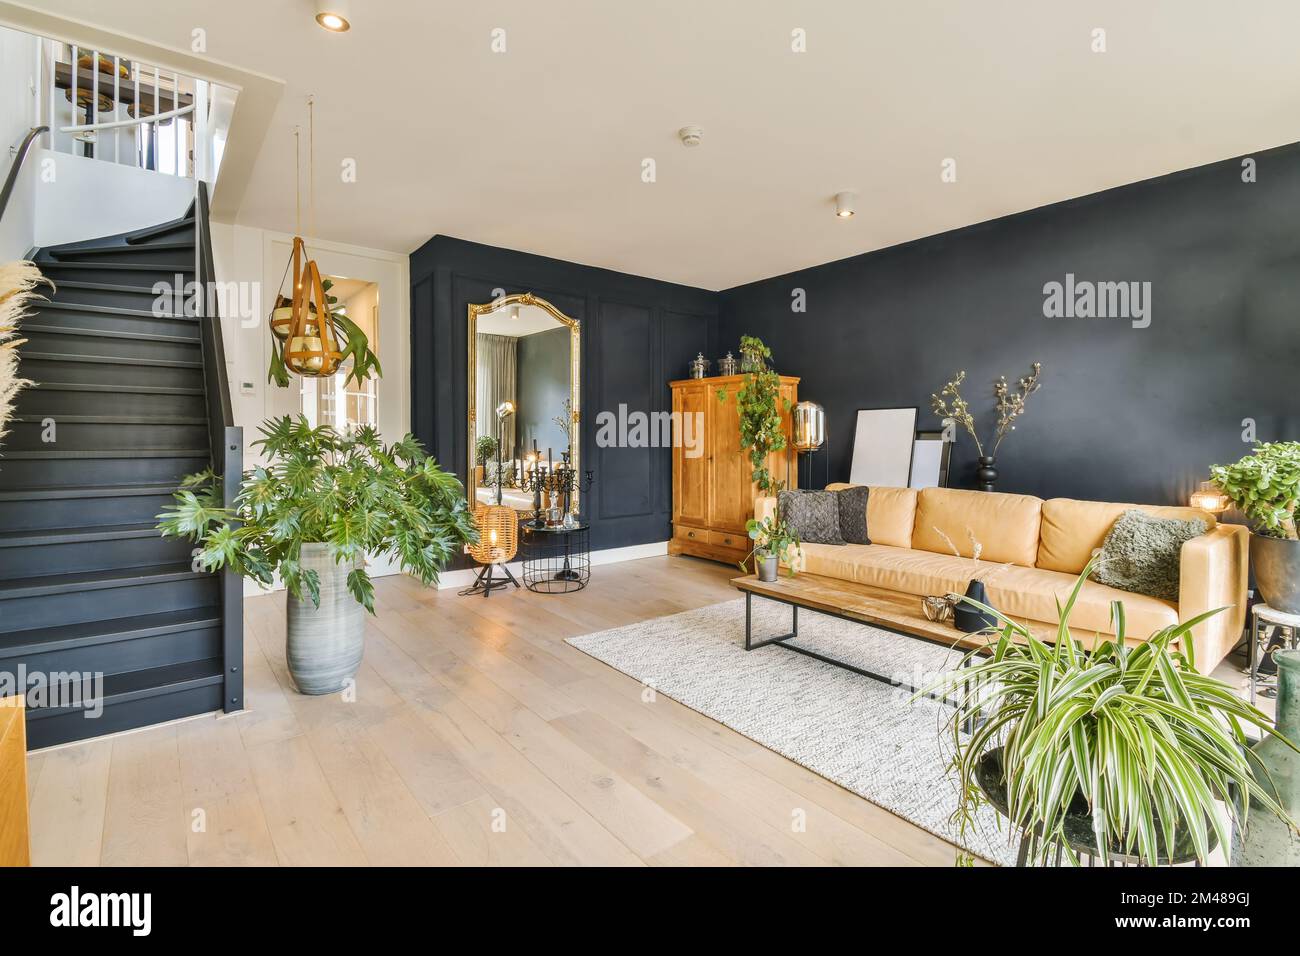 Ein Wohnzimmer mit schwarzen Wänden und Holzfußboden, weißen Verzierungen um die Treppe und Pflanzen in Töpfen auf dem Boden Stockfoto